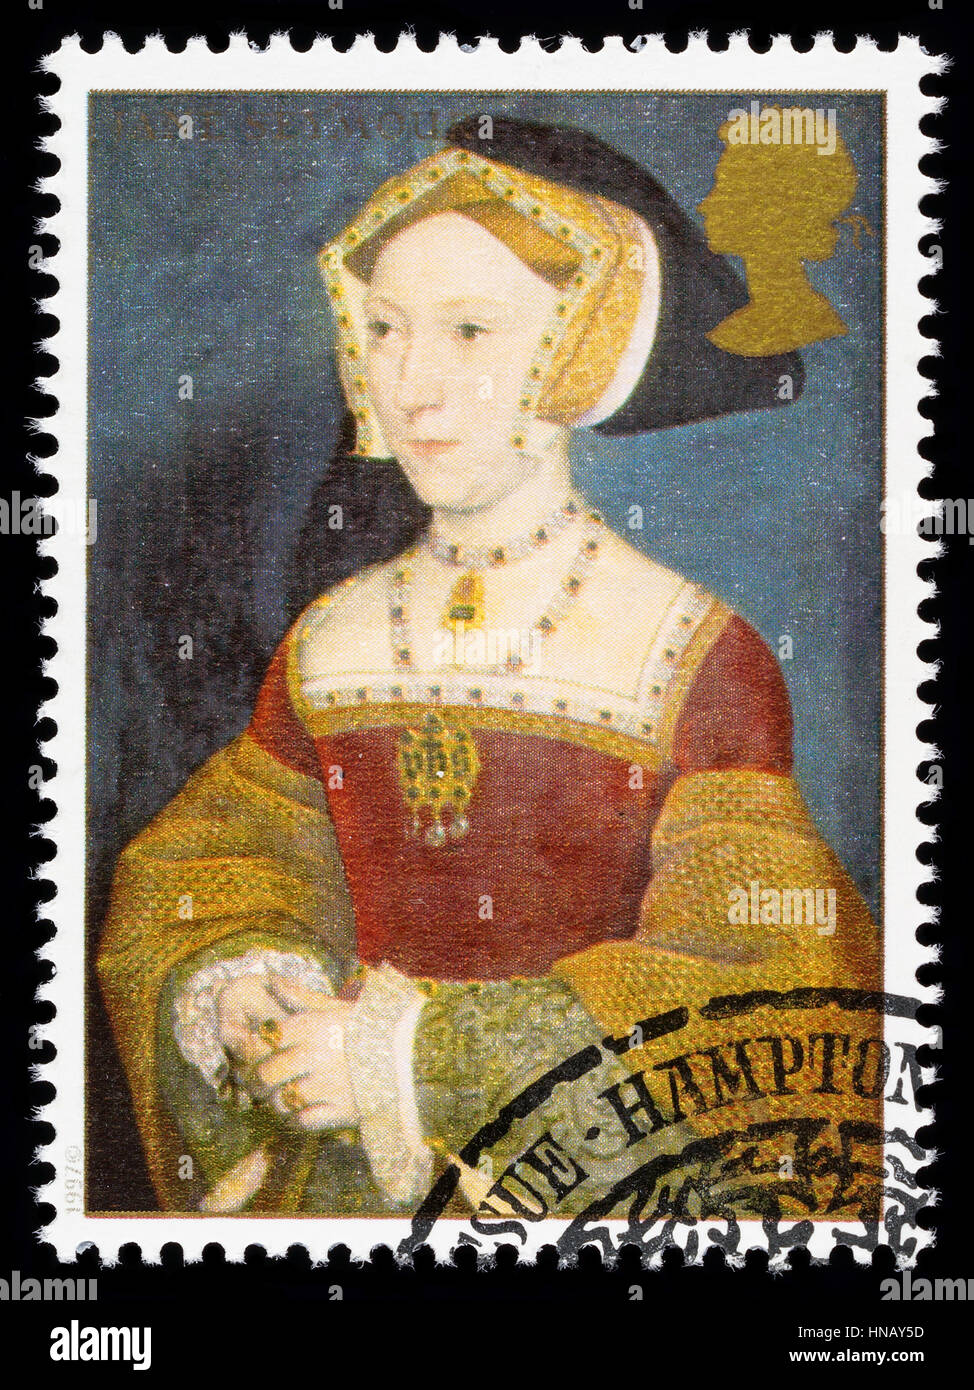 Royaume-uni - circa 1997 : timbre-poste imprimé en Grande-Bretagne commémorant le Roi Henry 8ème montrant Jane Seymour une de ses nombreuses épouses Banque D'Images